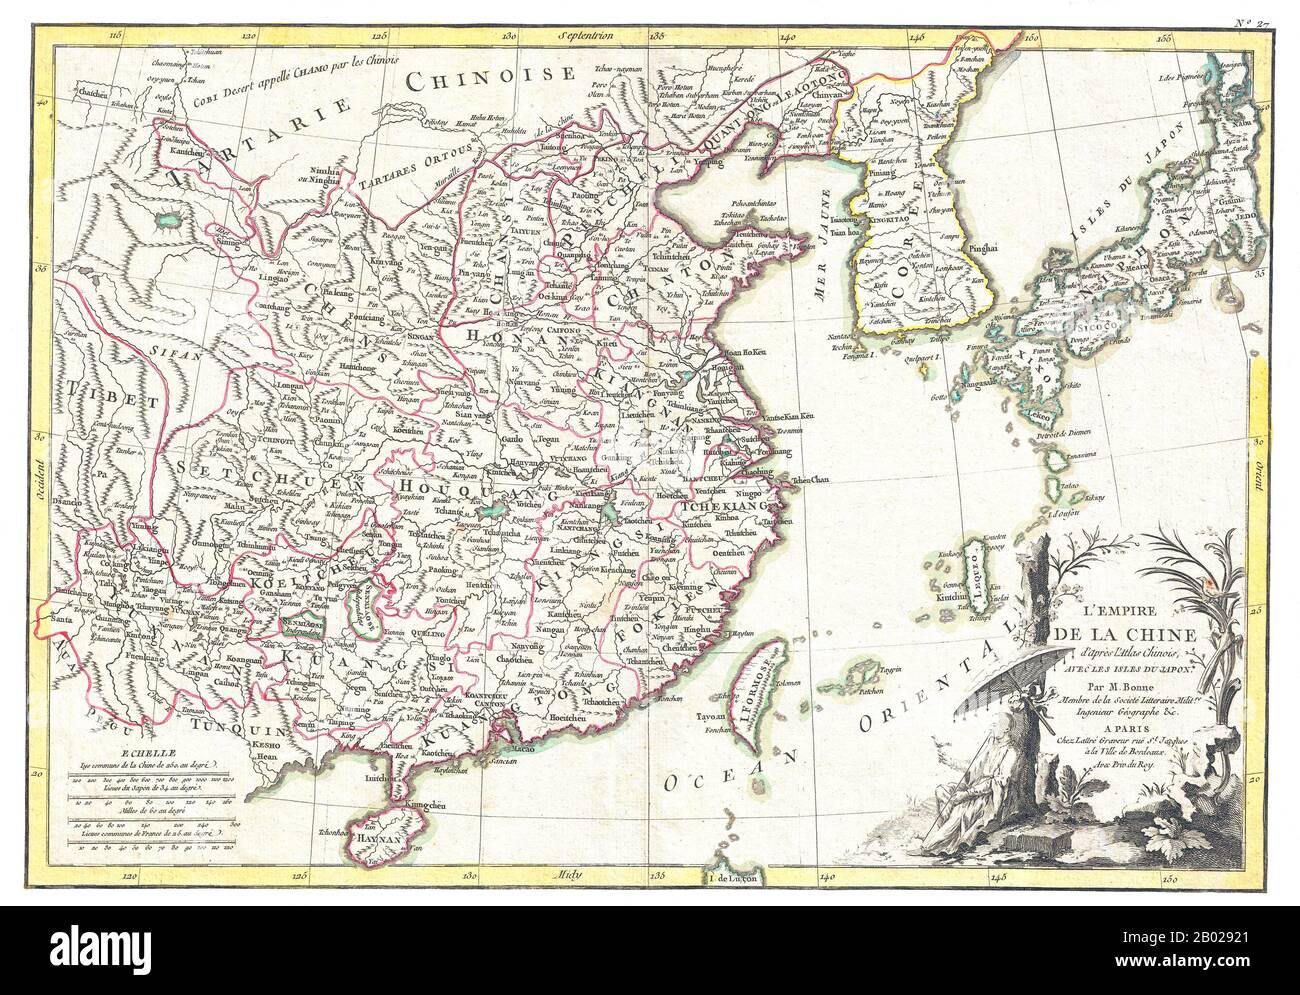 La carte décorative de Rigobert bonne de la Chine, de la Corée (Corea), du Japon et de Formosa (Taiwan). L'arera couverte s'étend du Tibet et du tartare chinois à l'est jusqu'au Japon et au sud jusqu'à Hainan. La Chine est divisée en différentes provinces avec les principales villes, les lacs et les voies fluviales. Noms Macao, Canton, Nanking (Nanjing), Jedo (Tokyo), Pékin (Beijing) et bien d'autres villes. Le quadrant inférieur droit est décoré d'un cartouche de titre élaboré montrant un érudit chinois ou un moine se relaxant avec un oiseau dans une forêt sous un parasol. Dessiné par R. bonne c. 1770 pour publication comme plaque n° 35 dans le numéro 1776 de Jean Lattre Banque D'Images